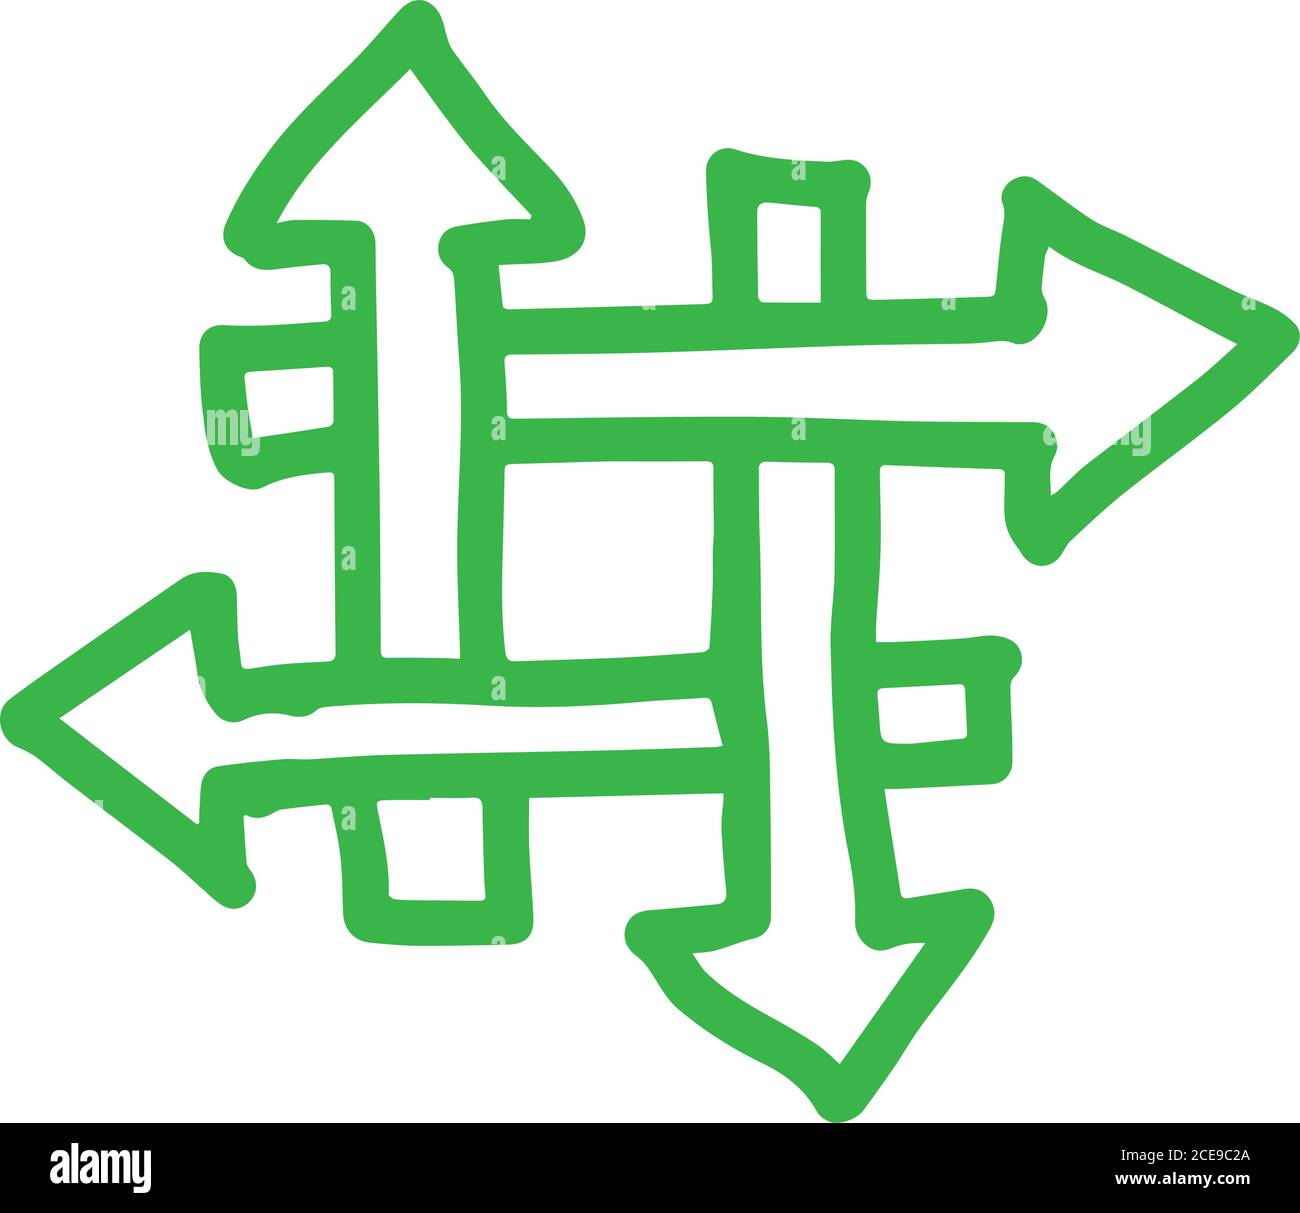 4 frecce disegnate a mano che formano un hashtag Illustrazione Vettoriale